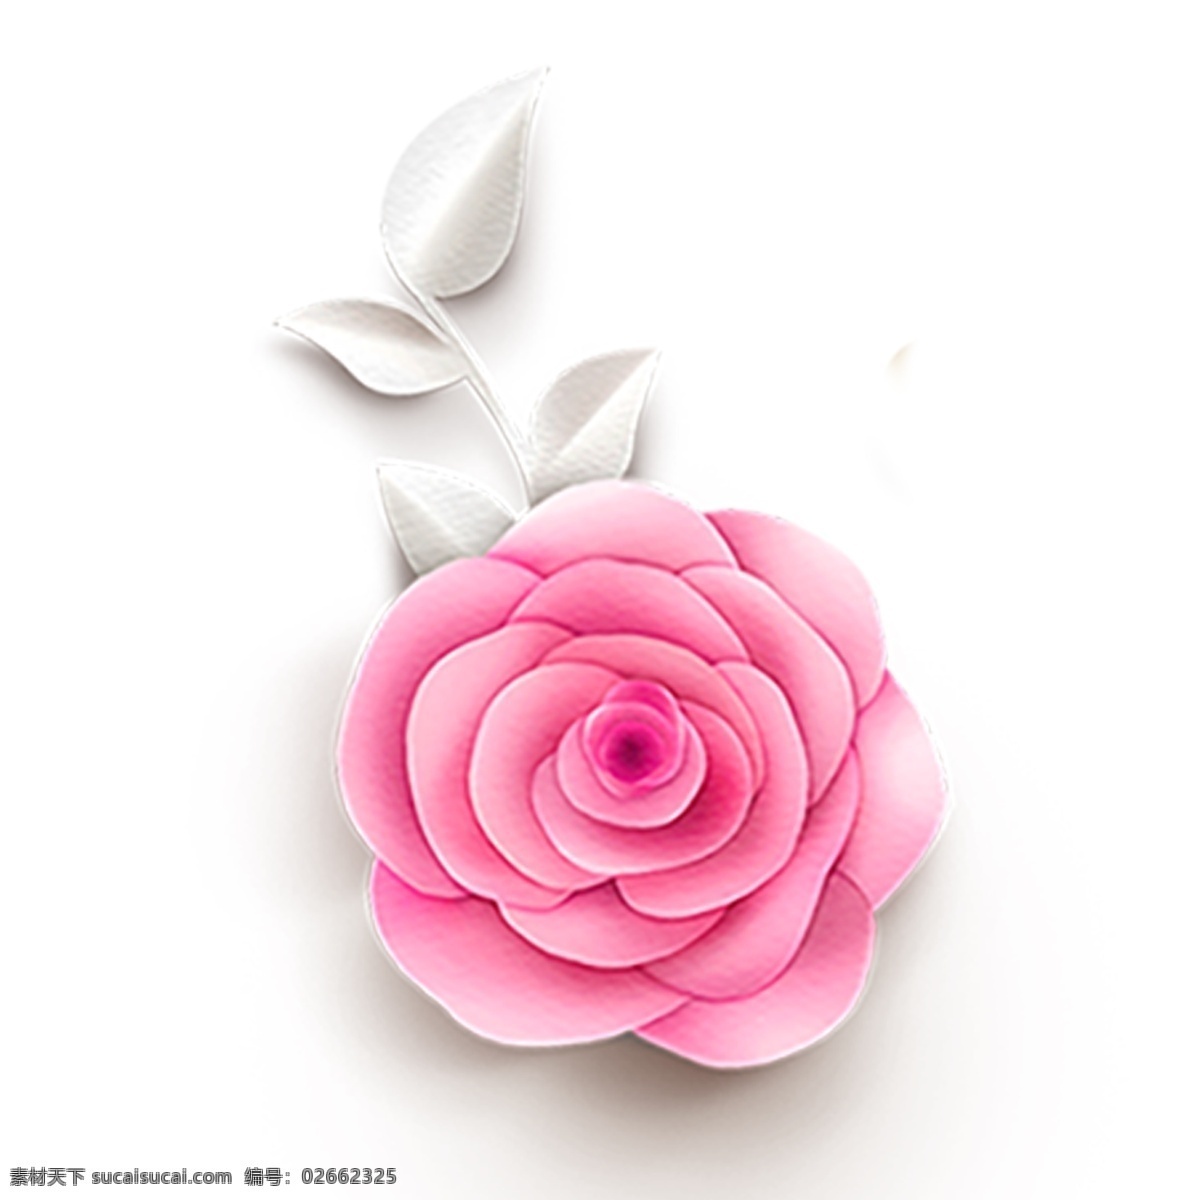 粉色 花卉 手绘 透明 淡粉色 鲜花 绿色 叶子 png元素 免扣素材